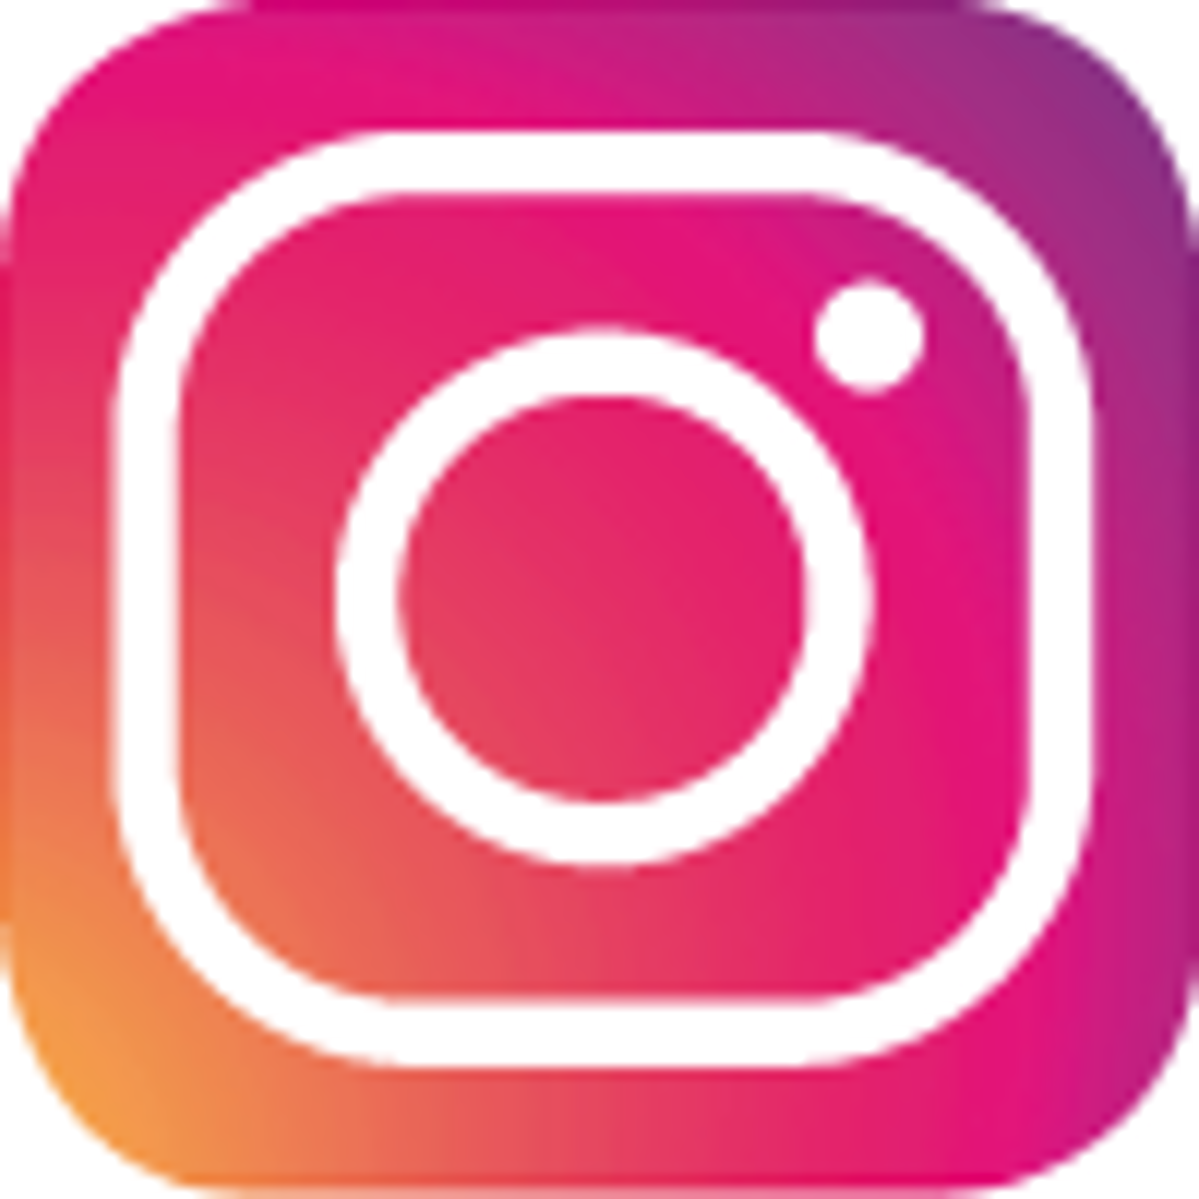 Das logo von Instagram, eine Handy-Kamera gezeichnet mit weiß auf rosa orangen Hintergrund.